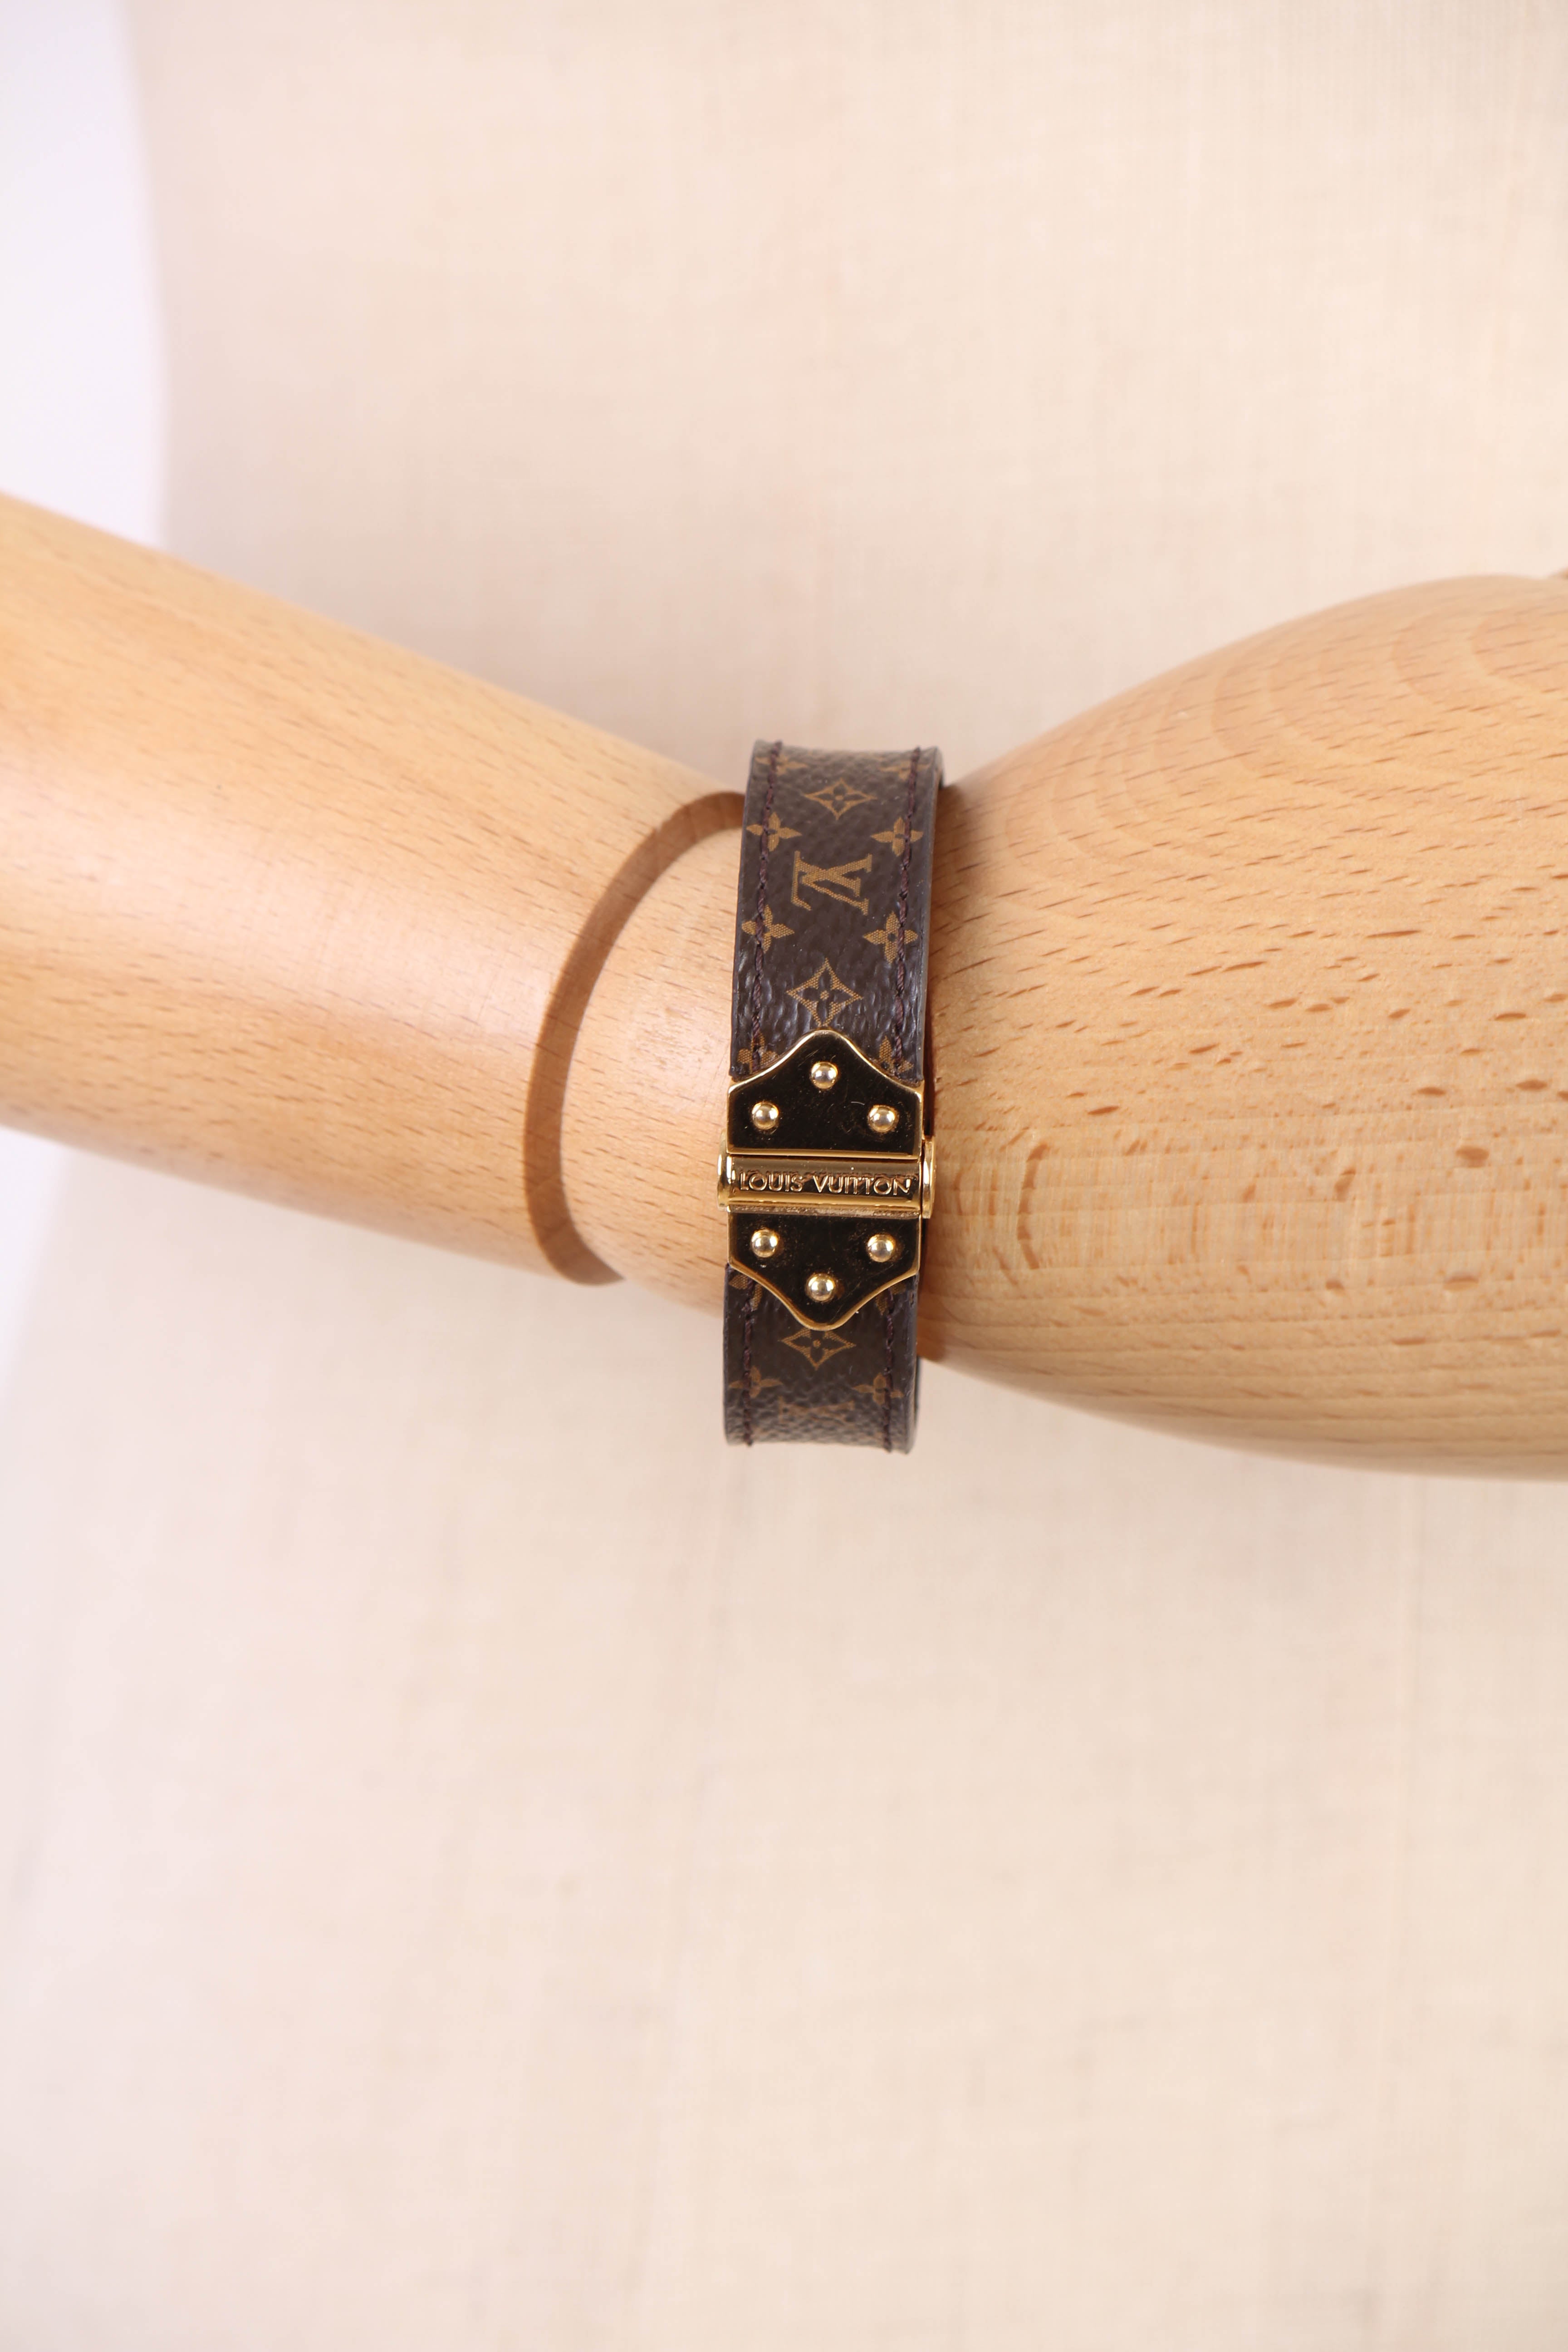 Louis Vuitton Nano Monogram Bracelet